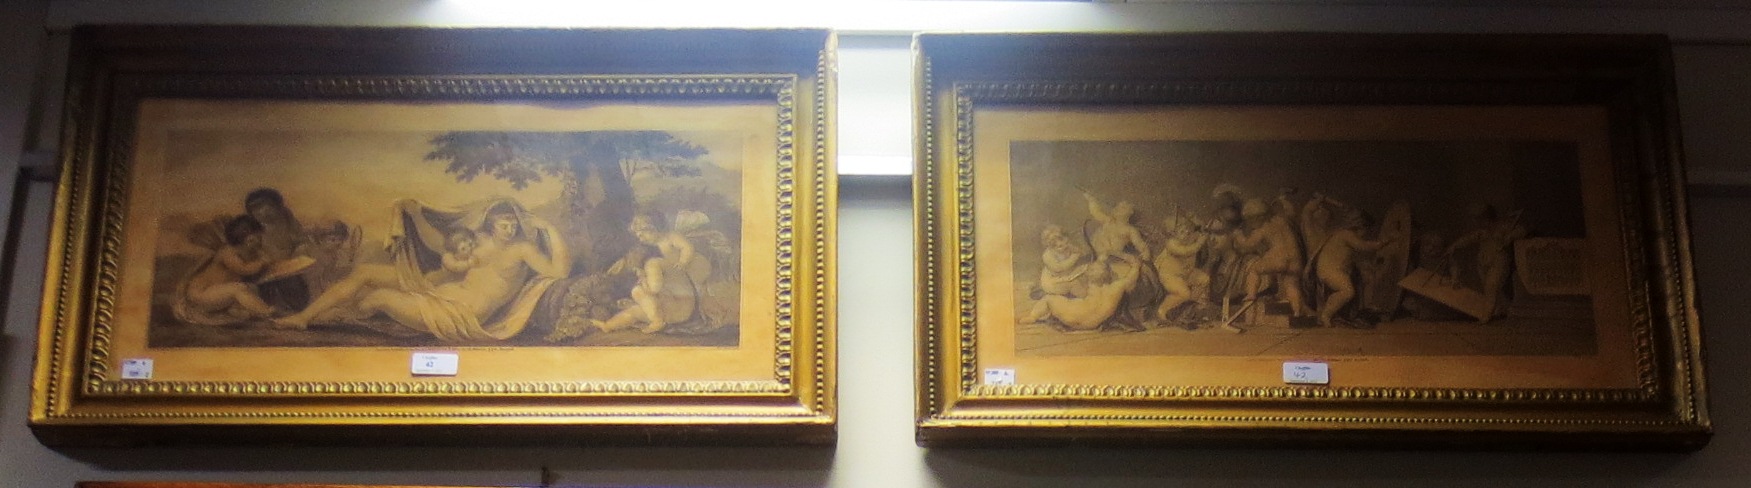 A pair of gilt framed engravings of cherbus after Bartolozzi A pair of gilt framed engravings of